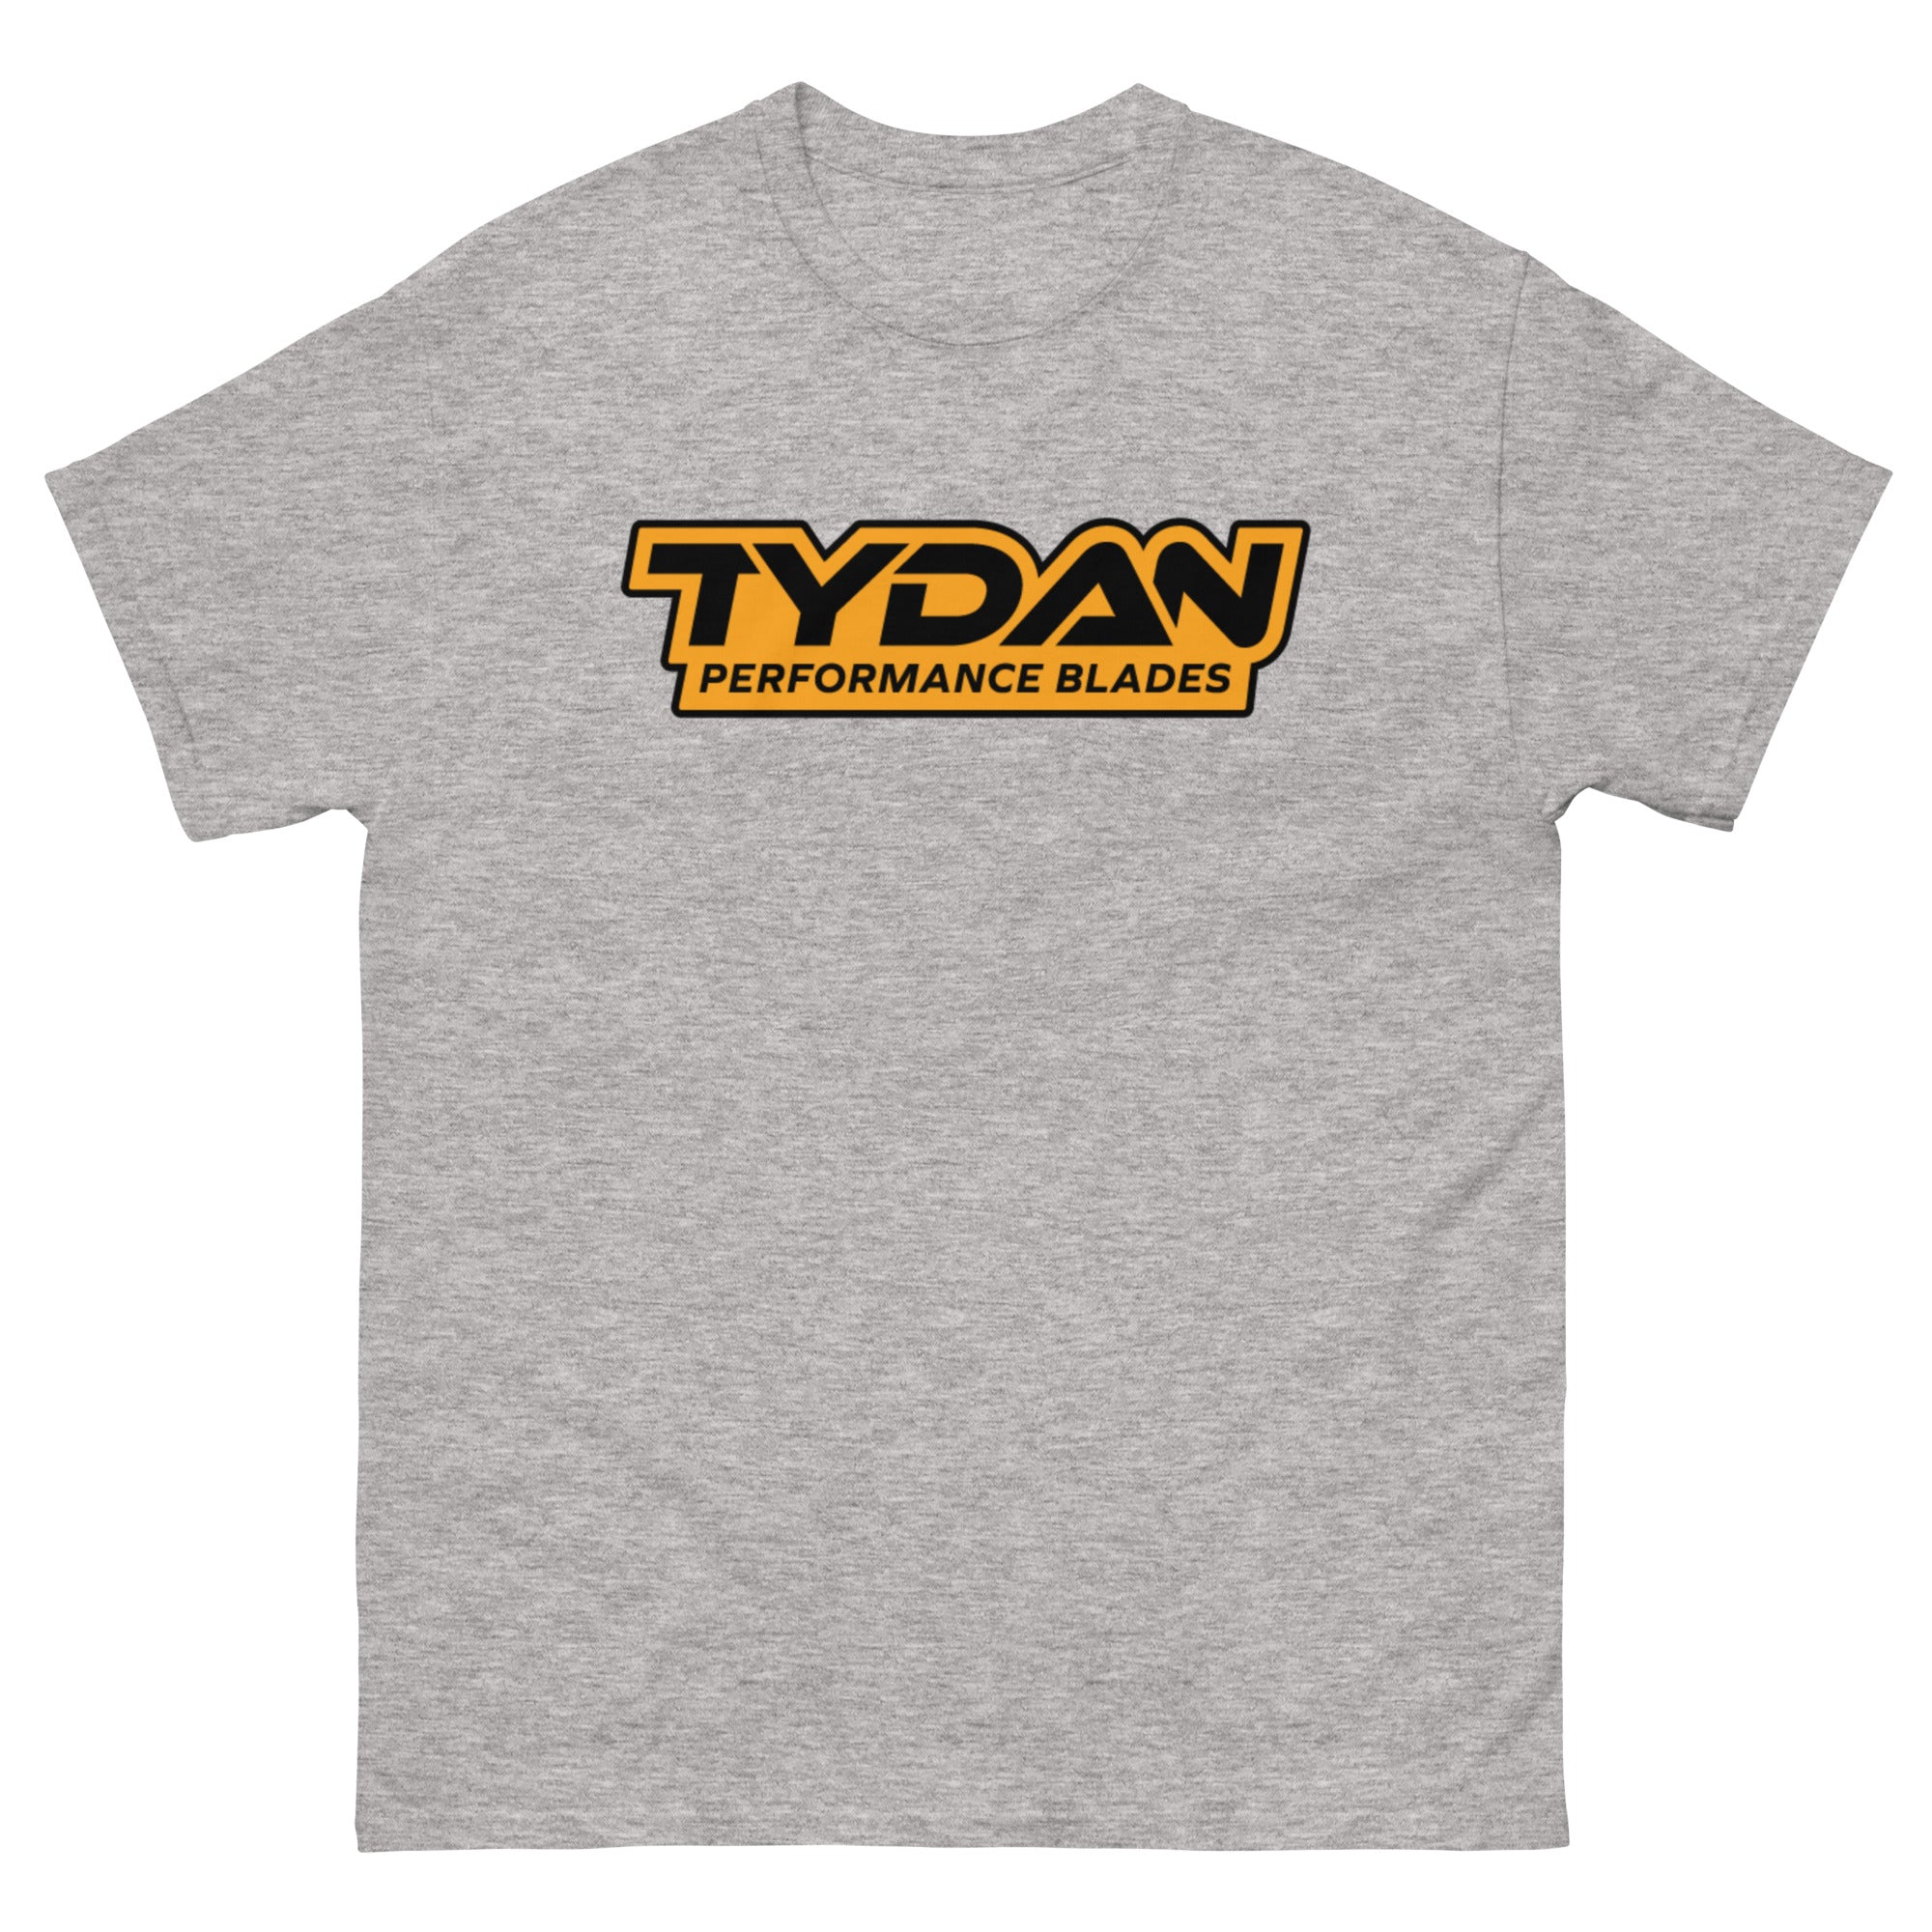 Classic T-Shirt - Tydan Specialty Blades Inc. (Canada)